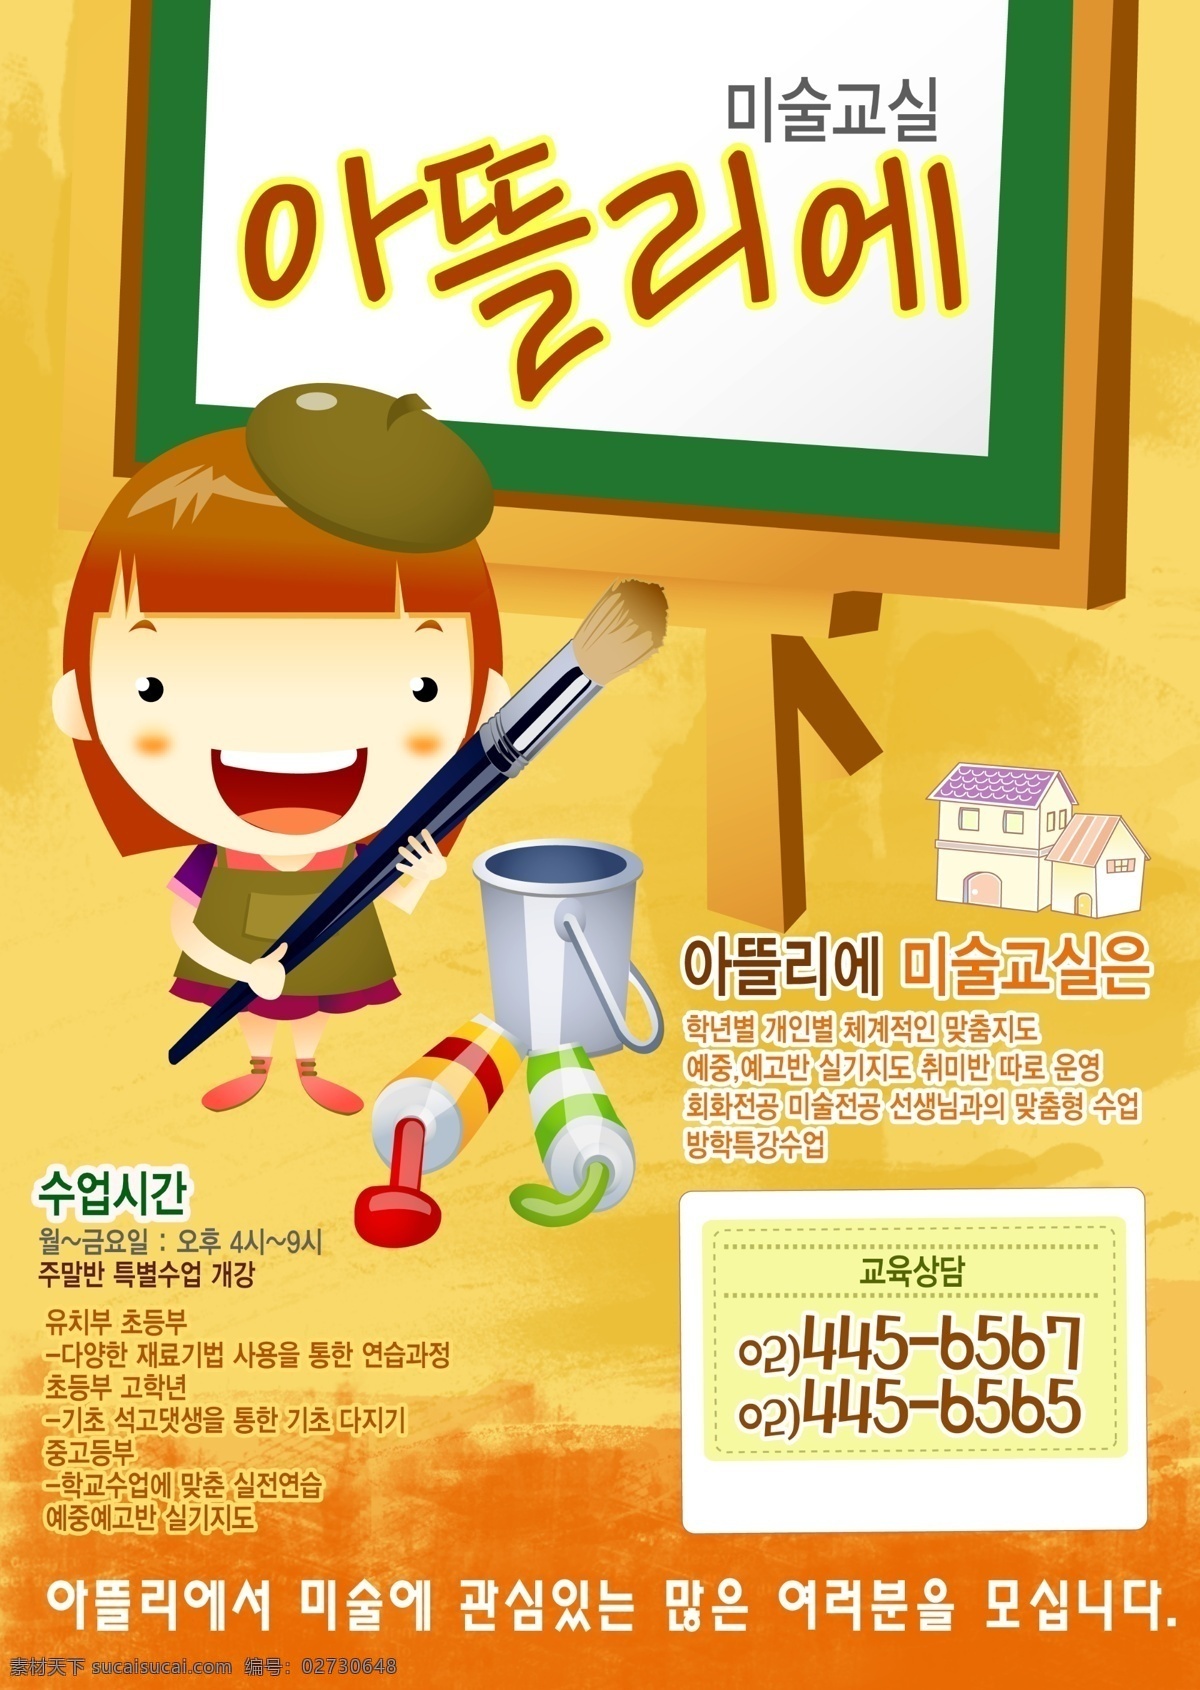 绘画海报 韩式 可爱 小人 风格 黑板 绘画 可爱小人 颜料 海报 psd源文件